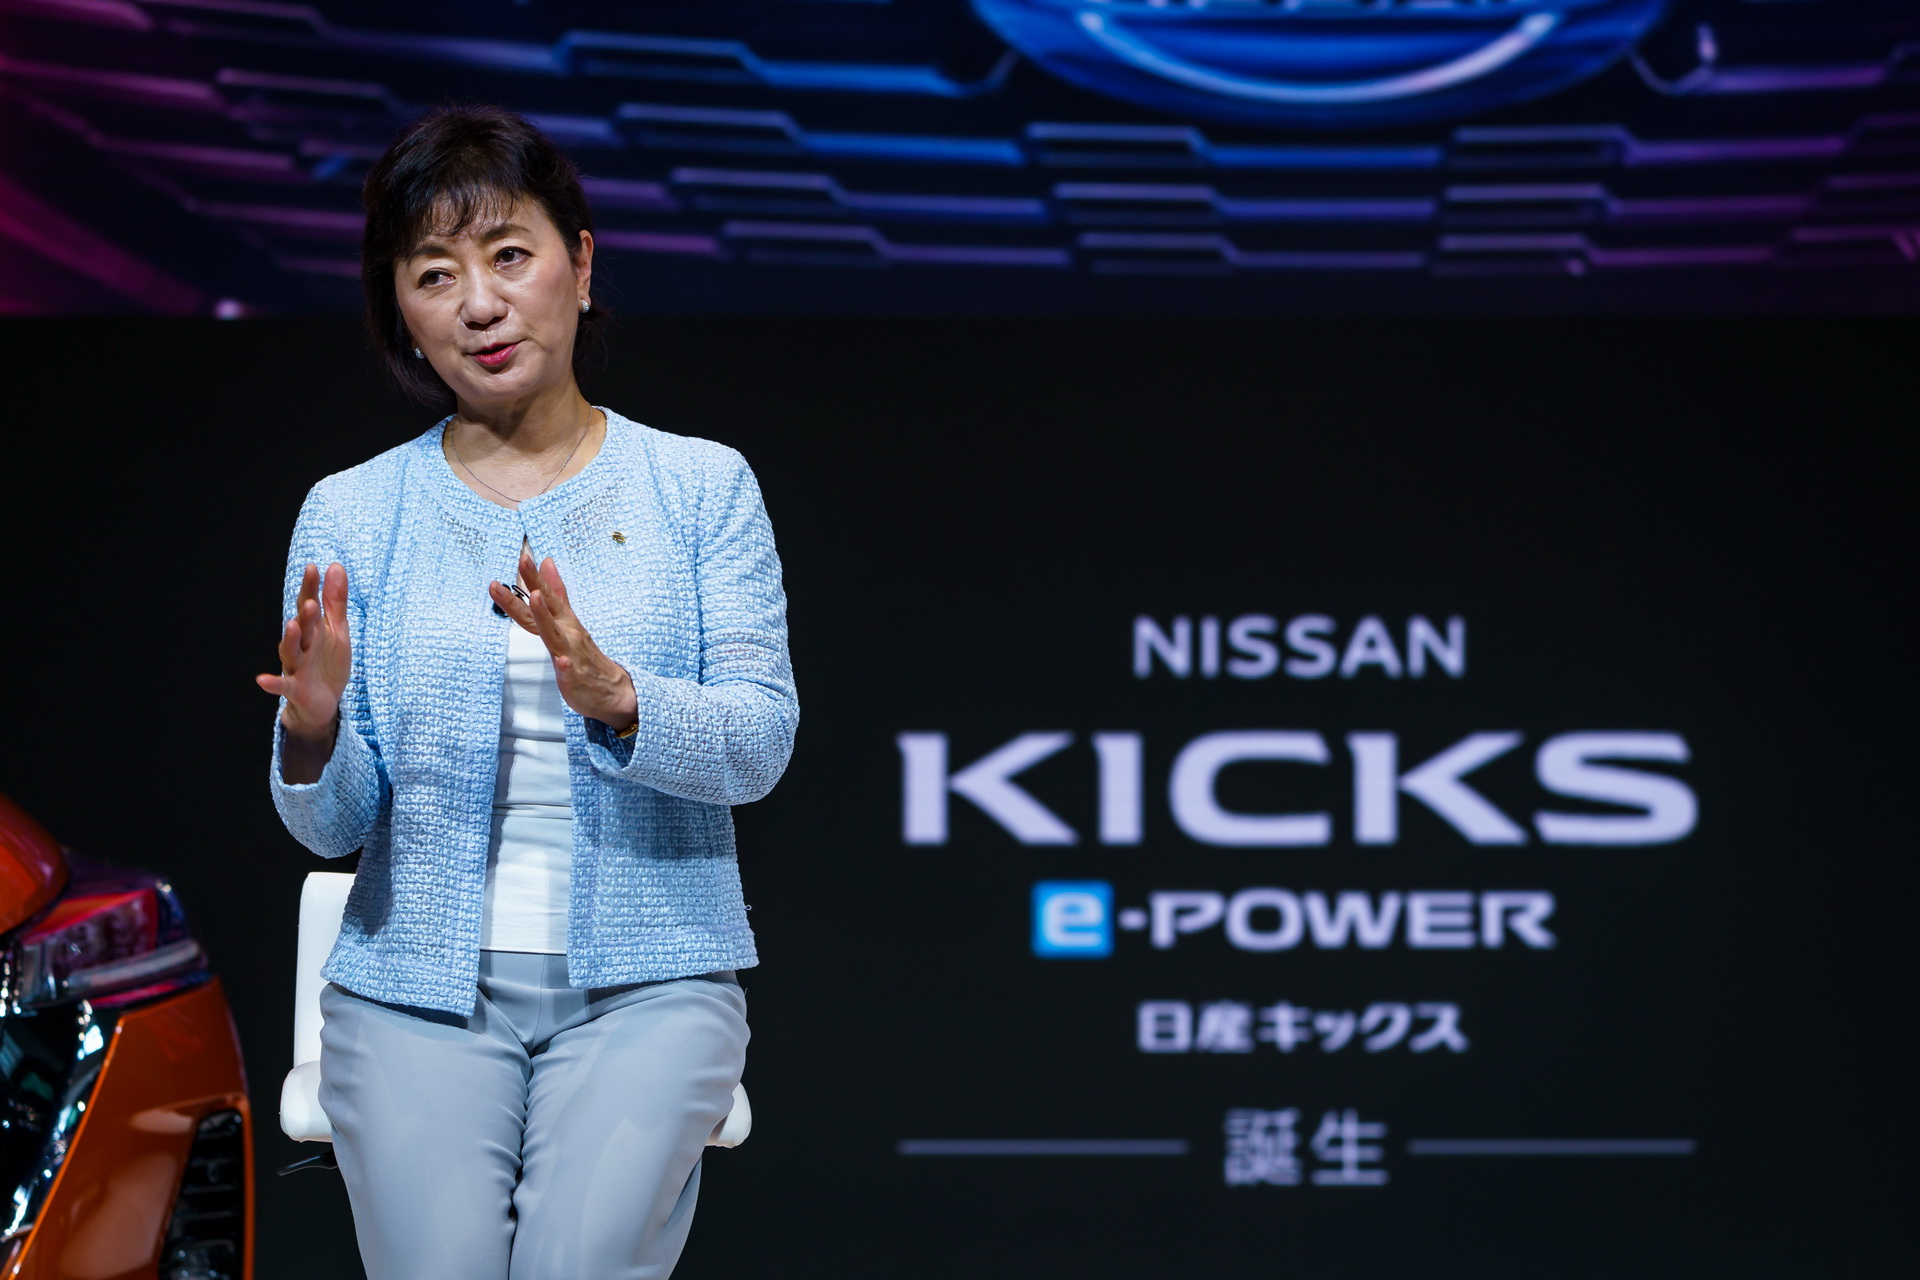 نيسان كيكس 2021 تدشن في اليابان "صور وتفاصيل جديدة" 37